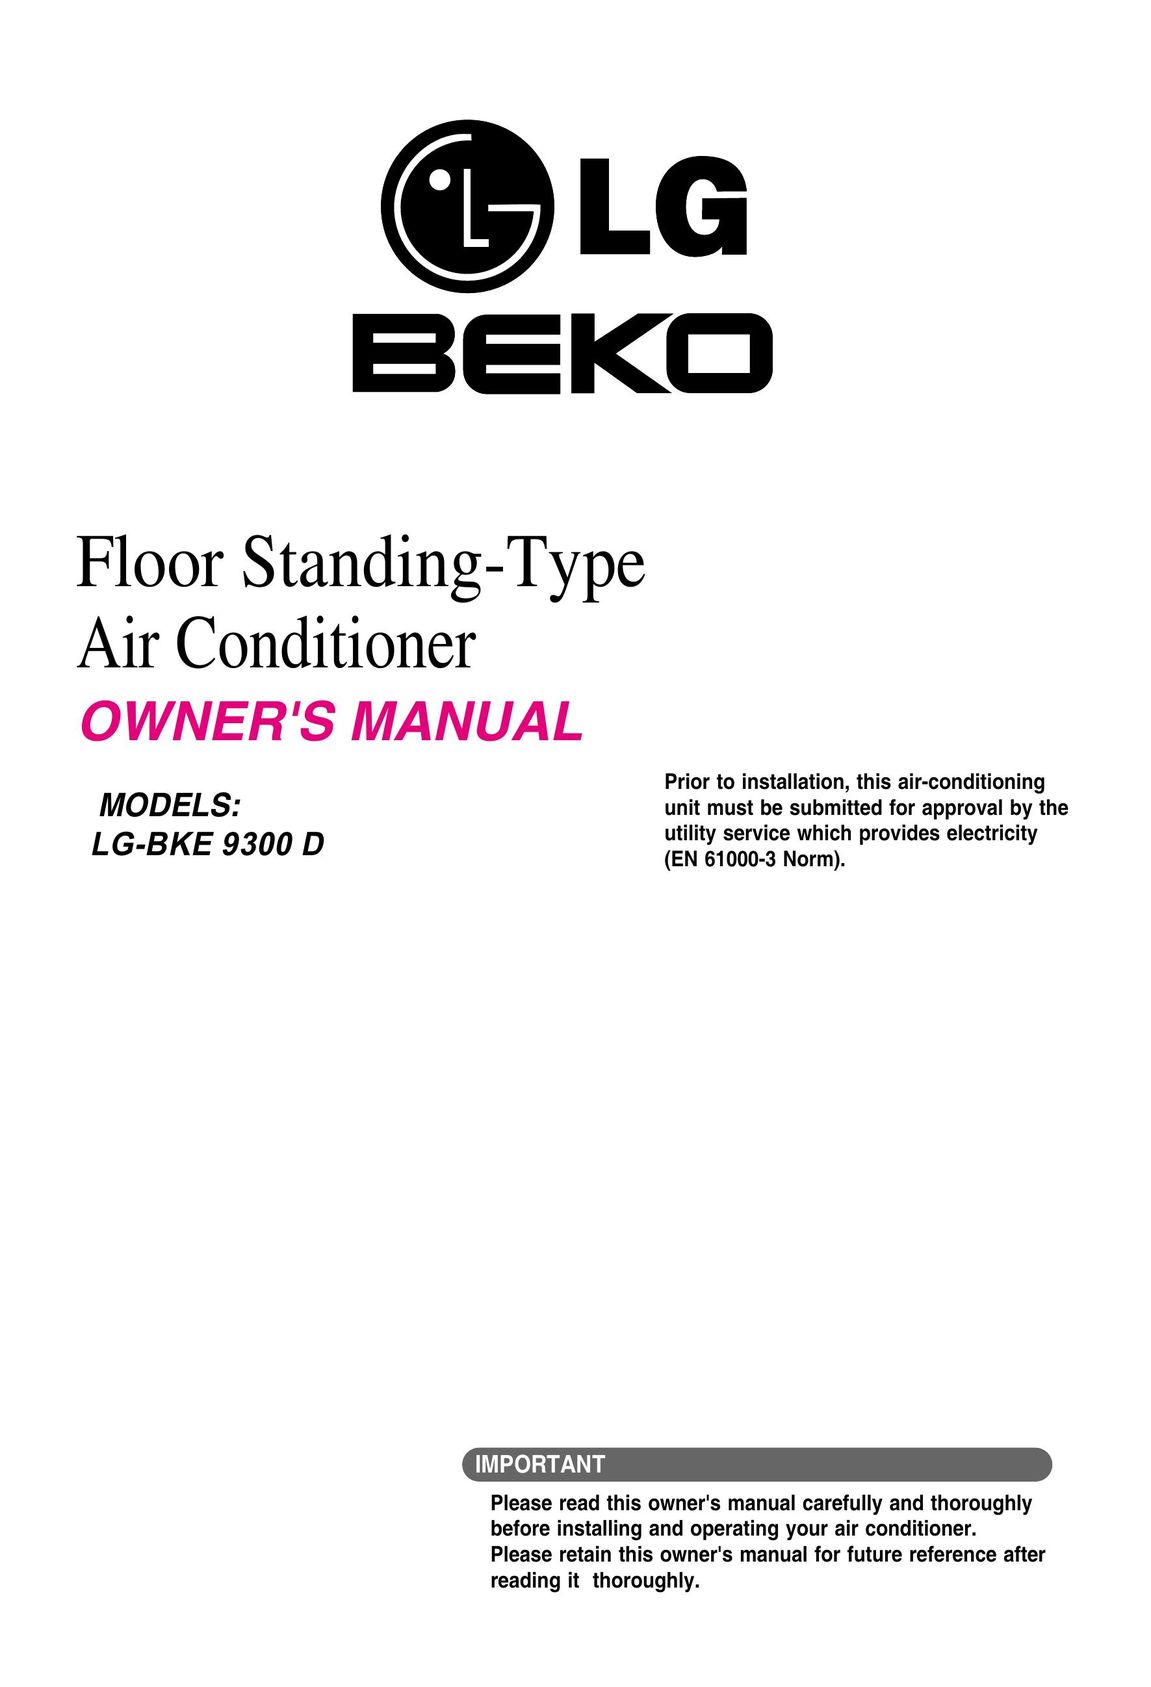 Beko LG-BKE 9300 D Air Conditioner User Manual